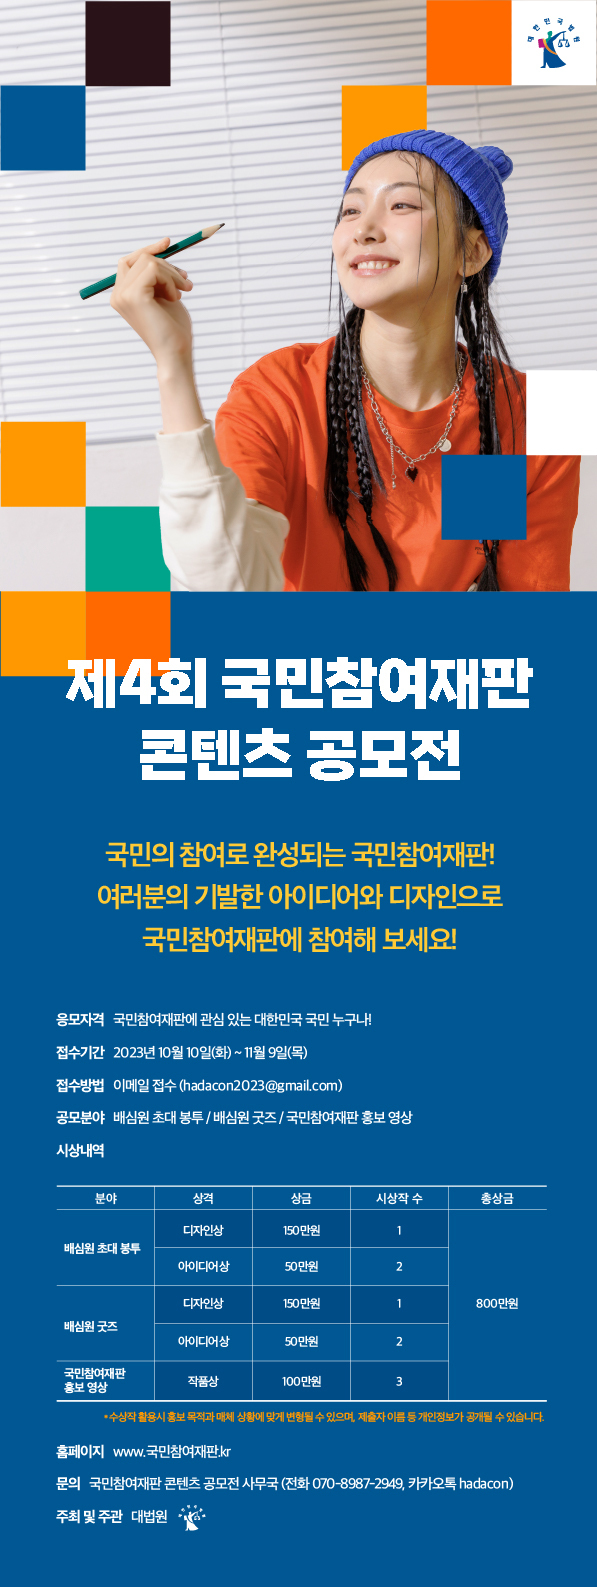 대법원 ‘제4회 국민참여재판 콘텐츠 공모전’ 개최